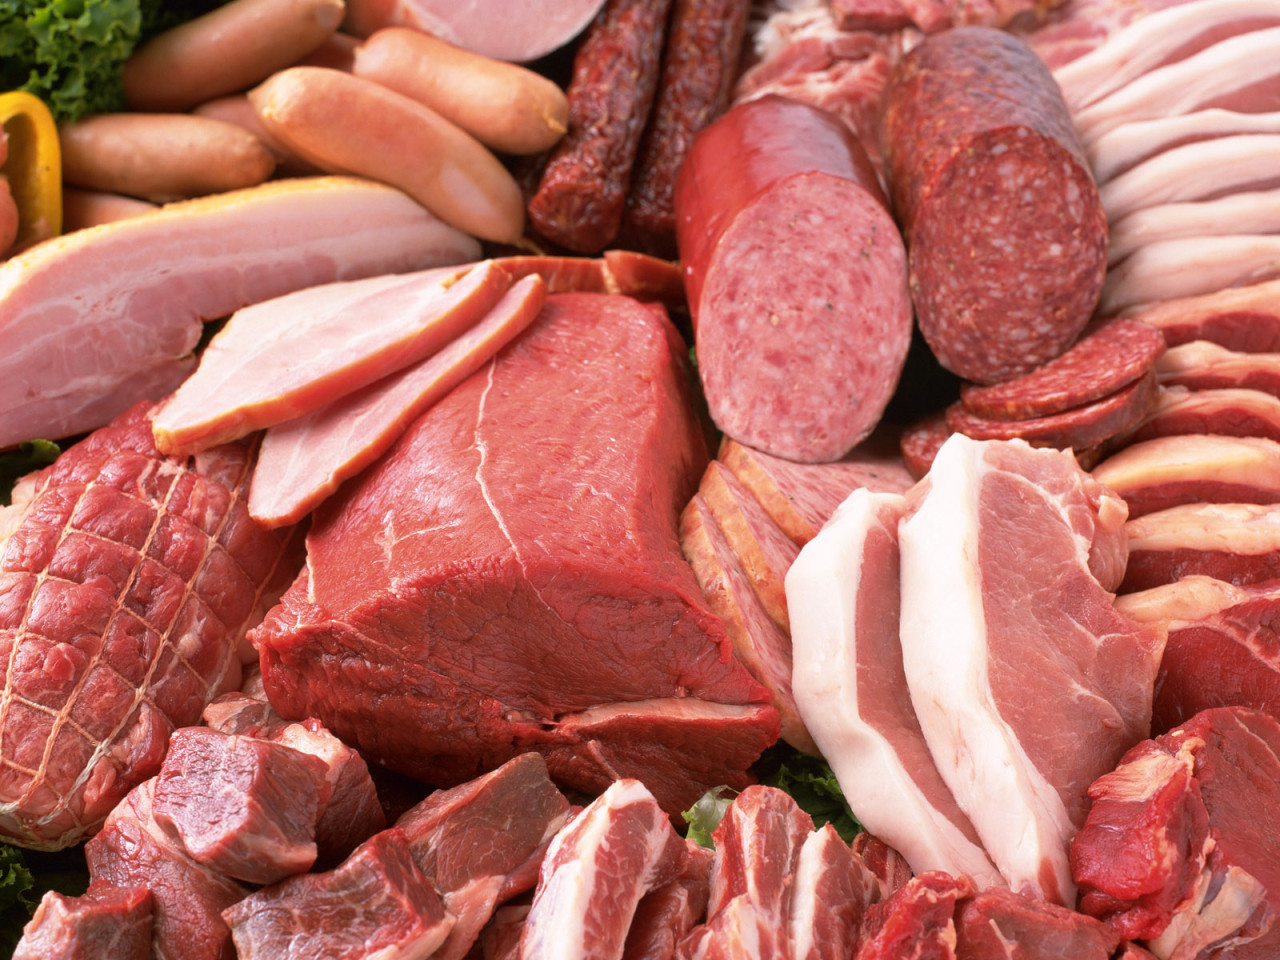 Carni rosse legate a maggior rischio di morte per nove malattie.